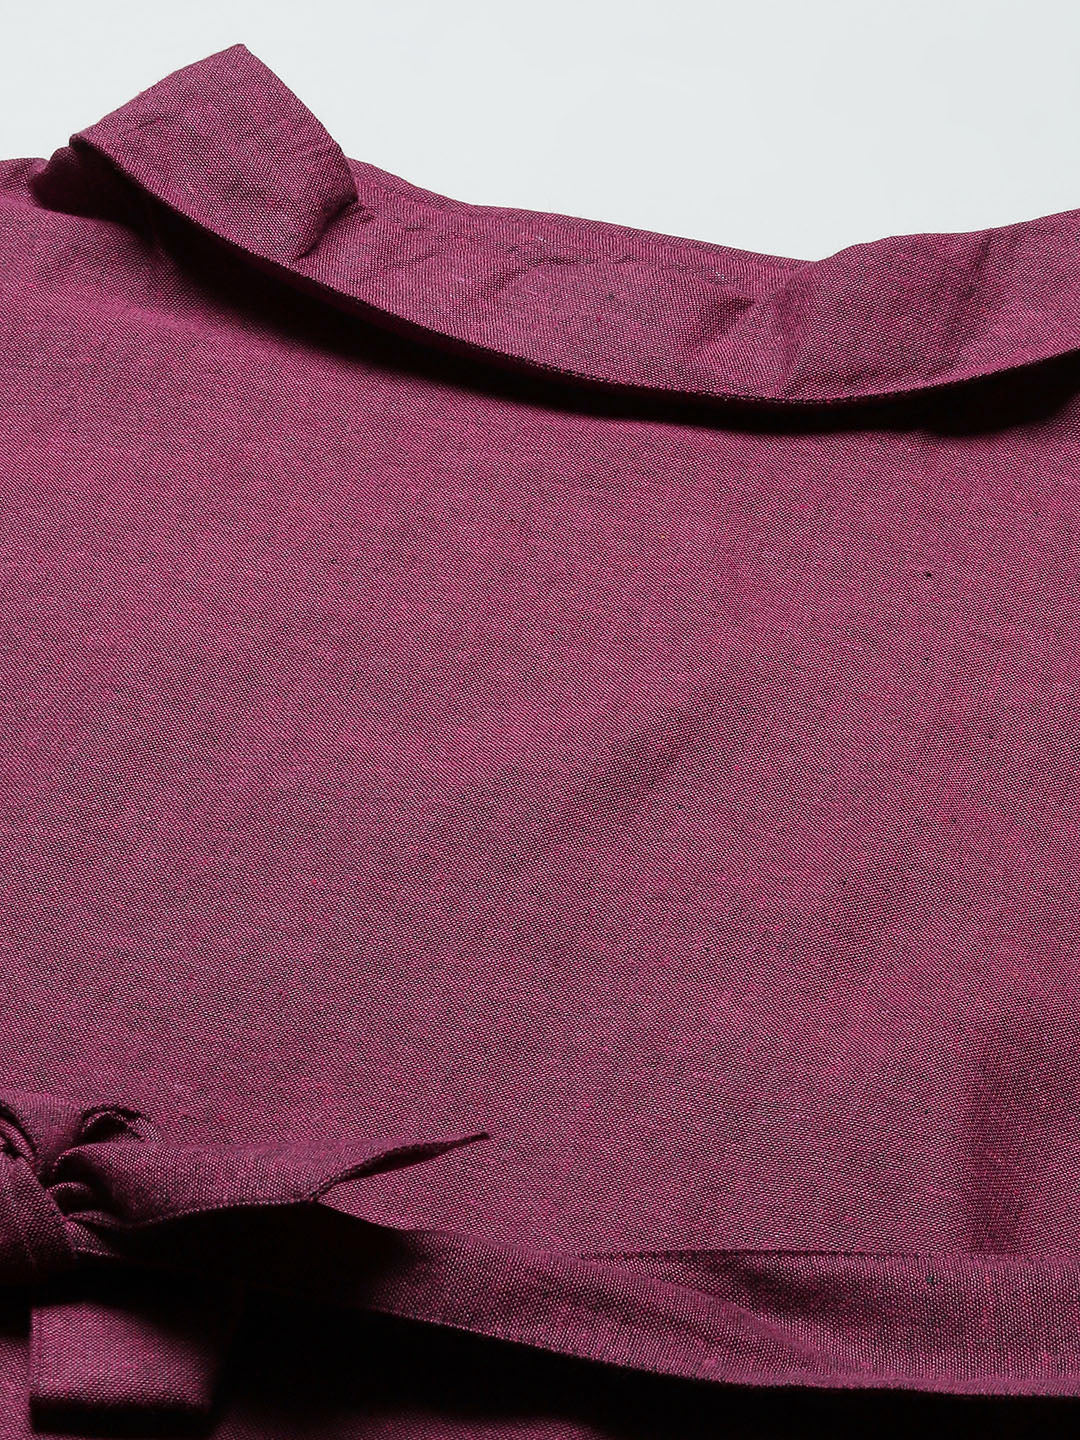 Cottinfab Burgundy Solid A-Line Dress with Belt